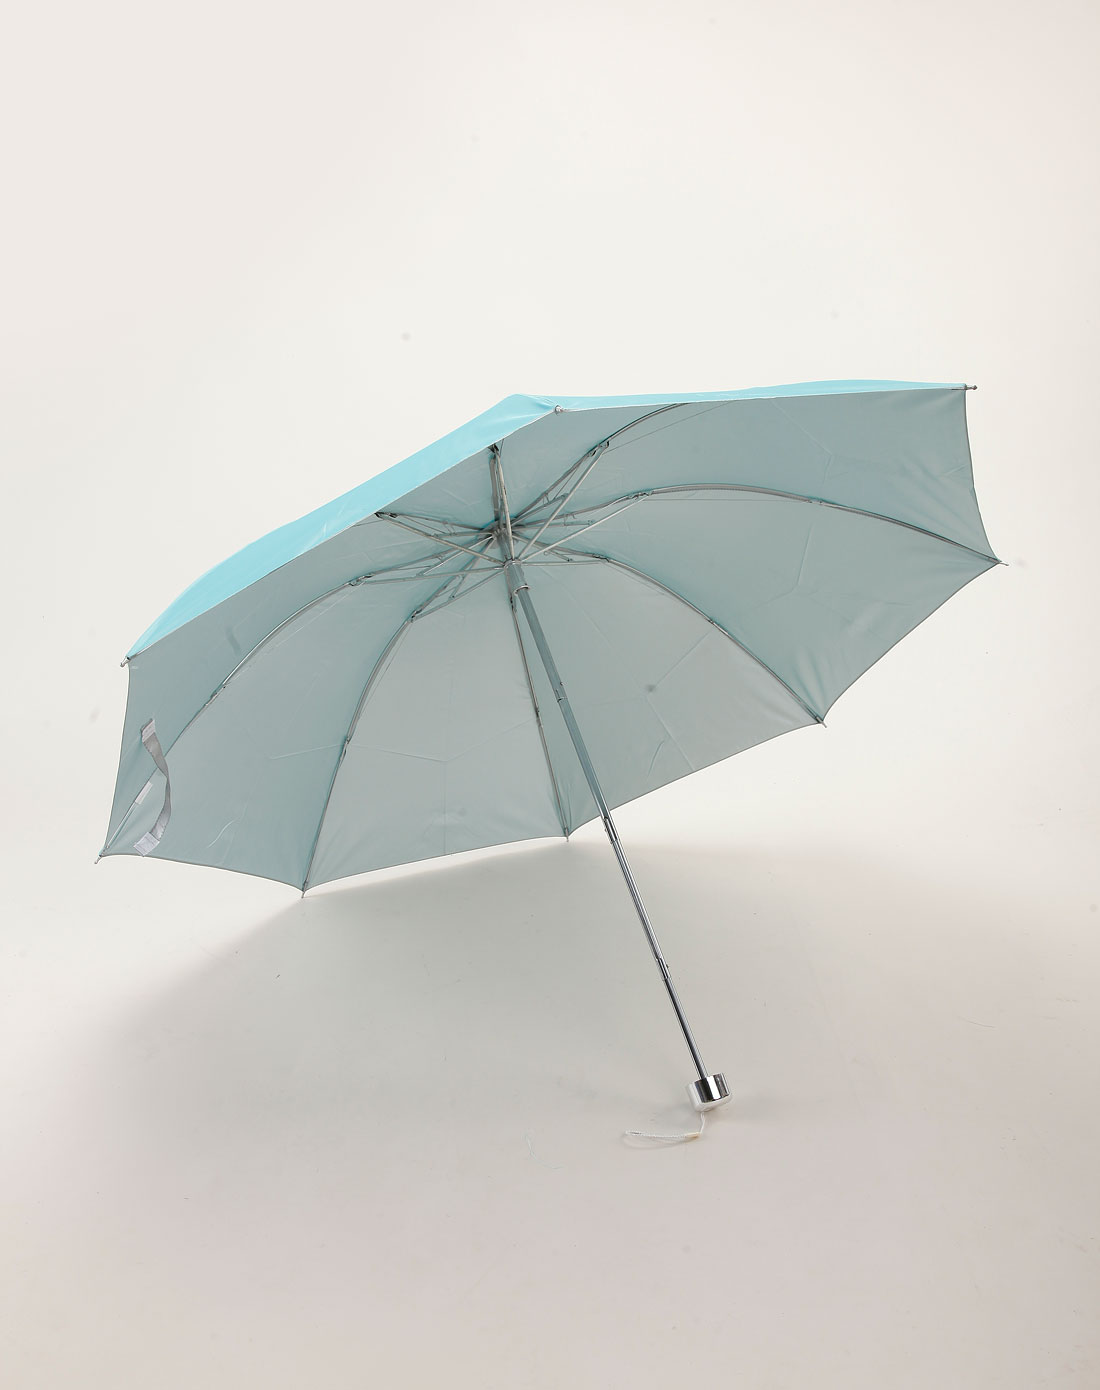 晴雨伞,太阳伞,雨伞,防风伞,自动伞,遮阳伞,黑胶伞,胶囊伞